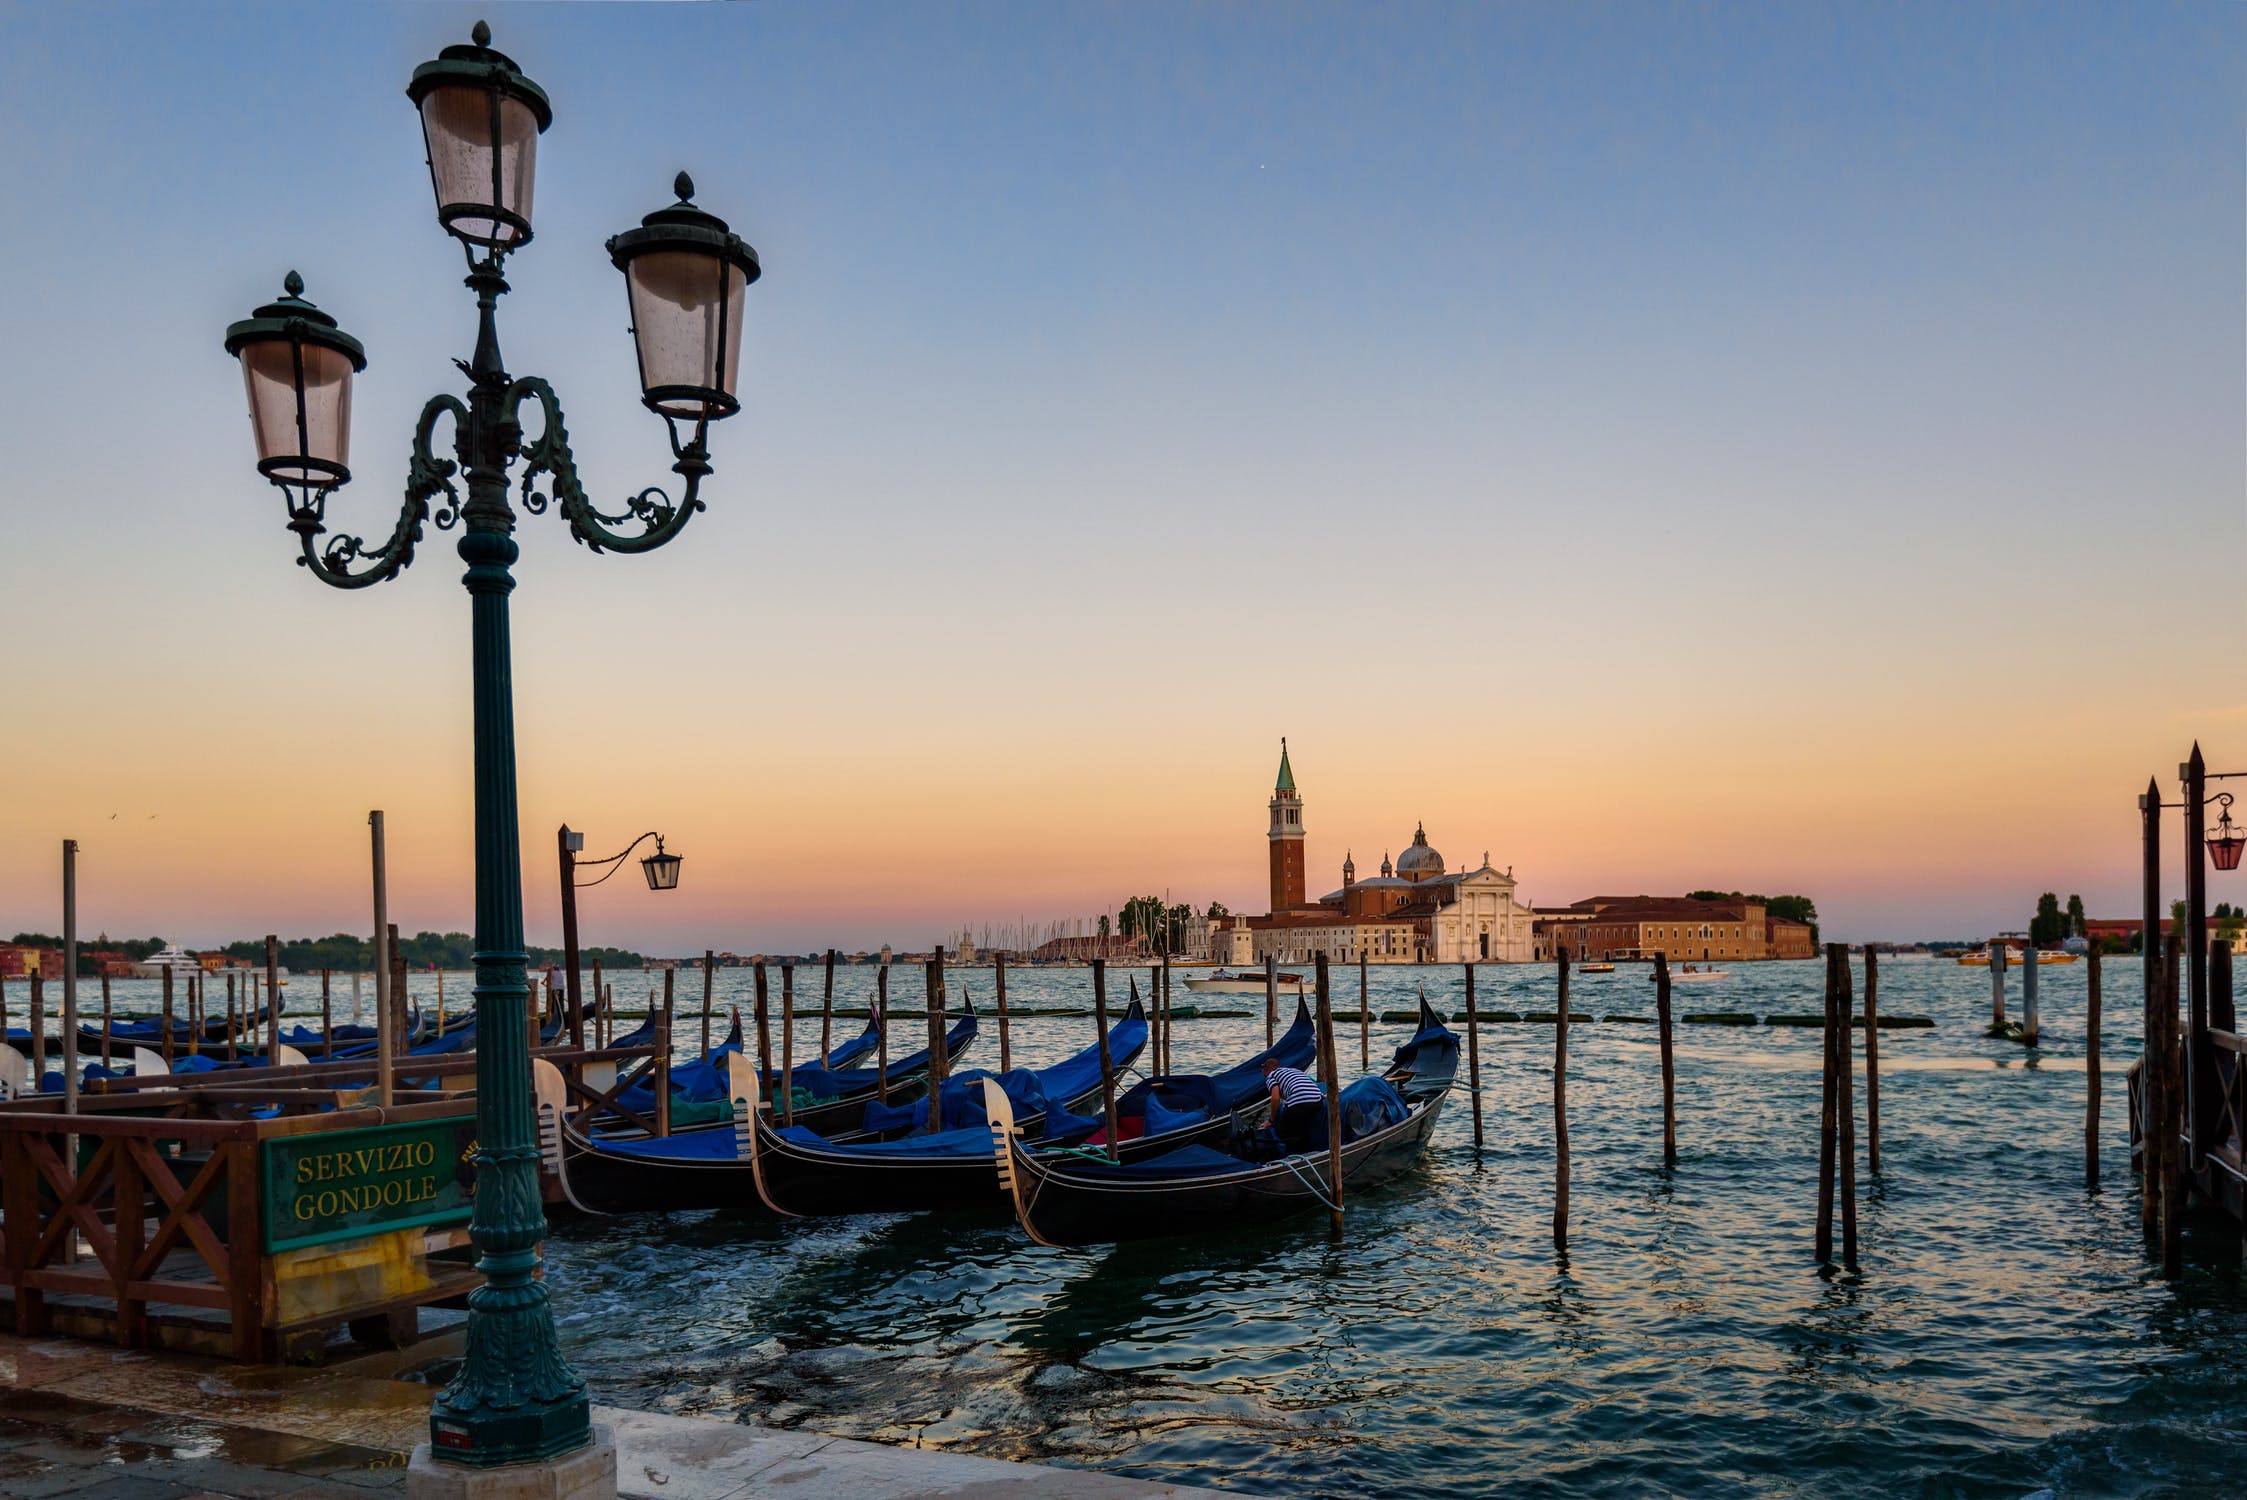 Cosa vedere a Venezia in 1 giorno?